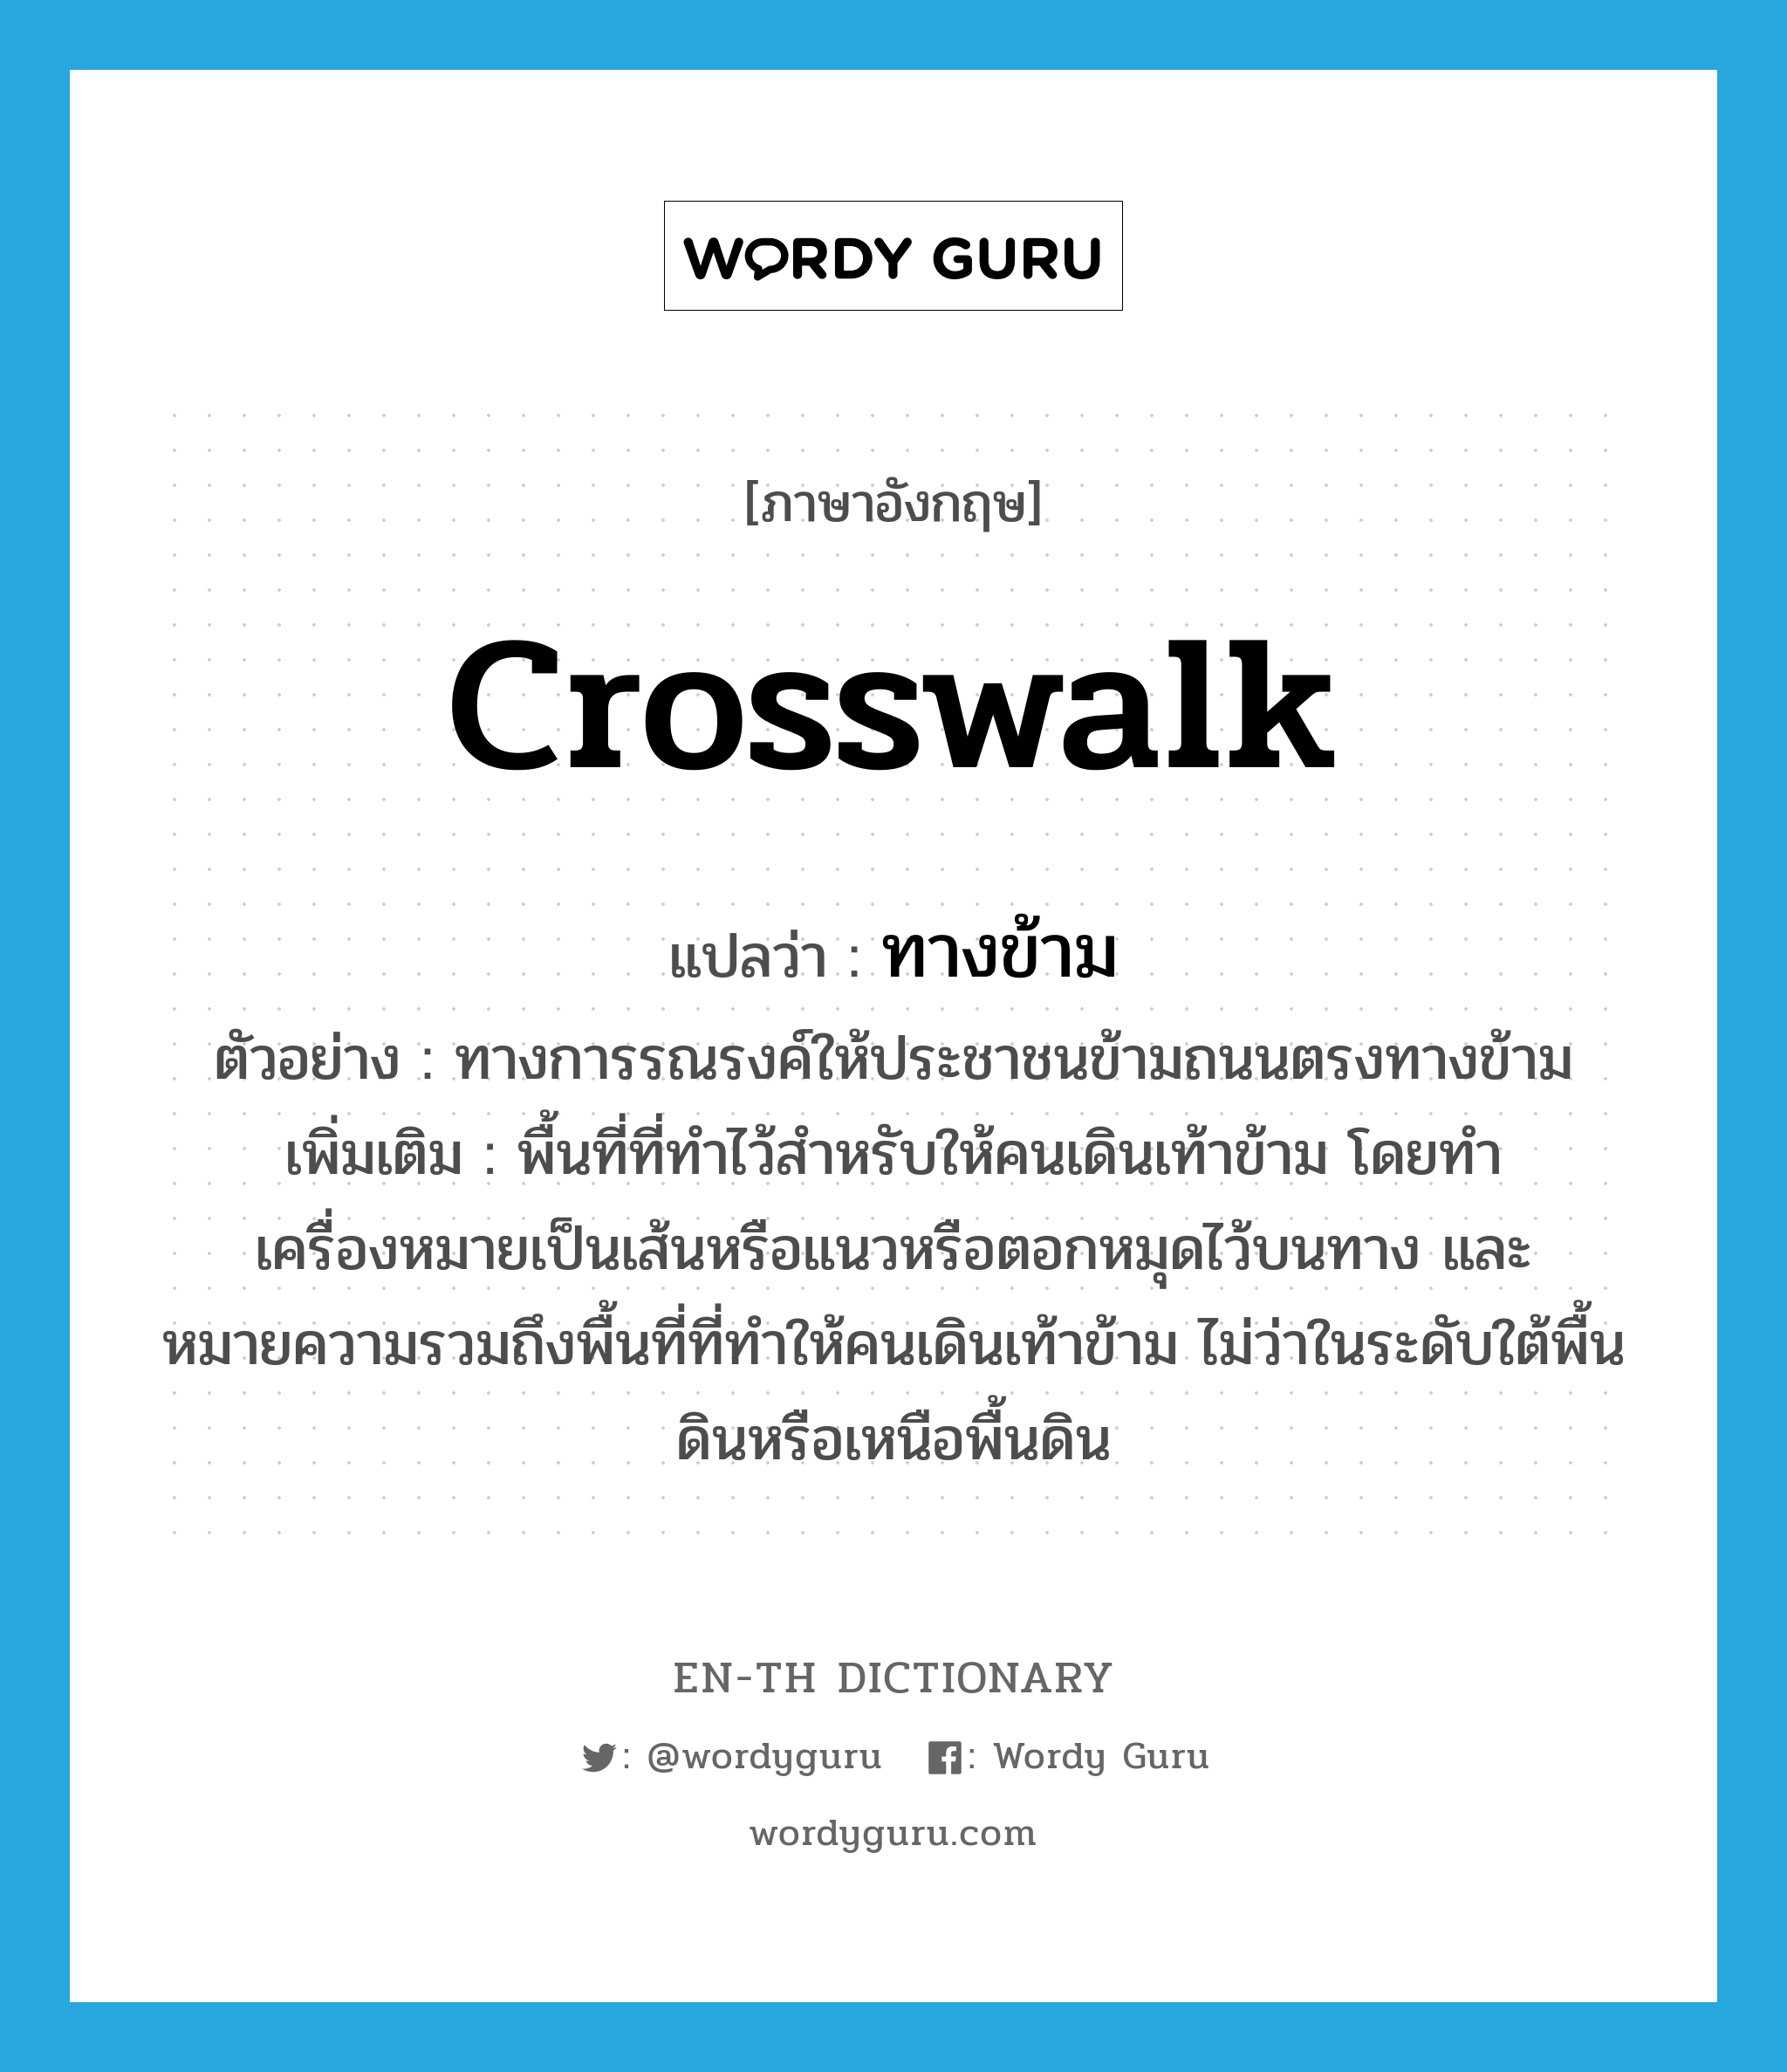 crosswalk แปลว่า?, คำศัพท์ภาษาอังกฤษ crosswalk แปลว่า ทางข้าม ประเภท N ตัวอย่าง ทางการรณรงค์ให้ประชาชนข้ามถนนตรงทางข้าม เพิ่มเติม พื้นที่ที่ทำไว้สำหรับให้คนเดินเท้าข้าม โดยทำเครื่องหมายเป็นเส้นหรือแนวหรือตอกหมุดไว้บนทาง และหมายความรวมถึงพื้นที่ที่ทำให้คนเดินเท้าข้าม ไม่ว่าในระดับใต้พื้นดินหรือเหนือพื้นดิน หมวด N